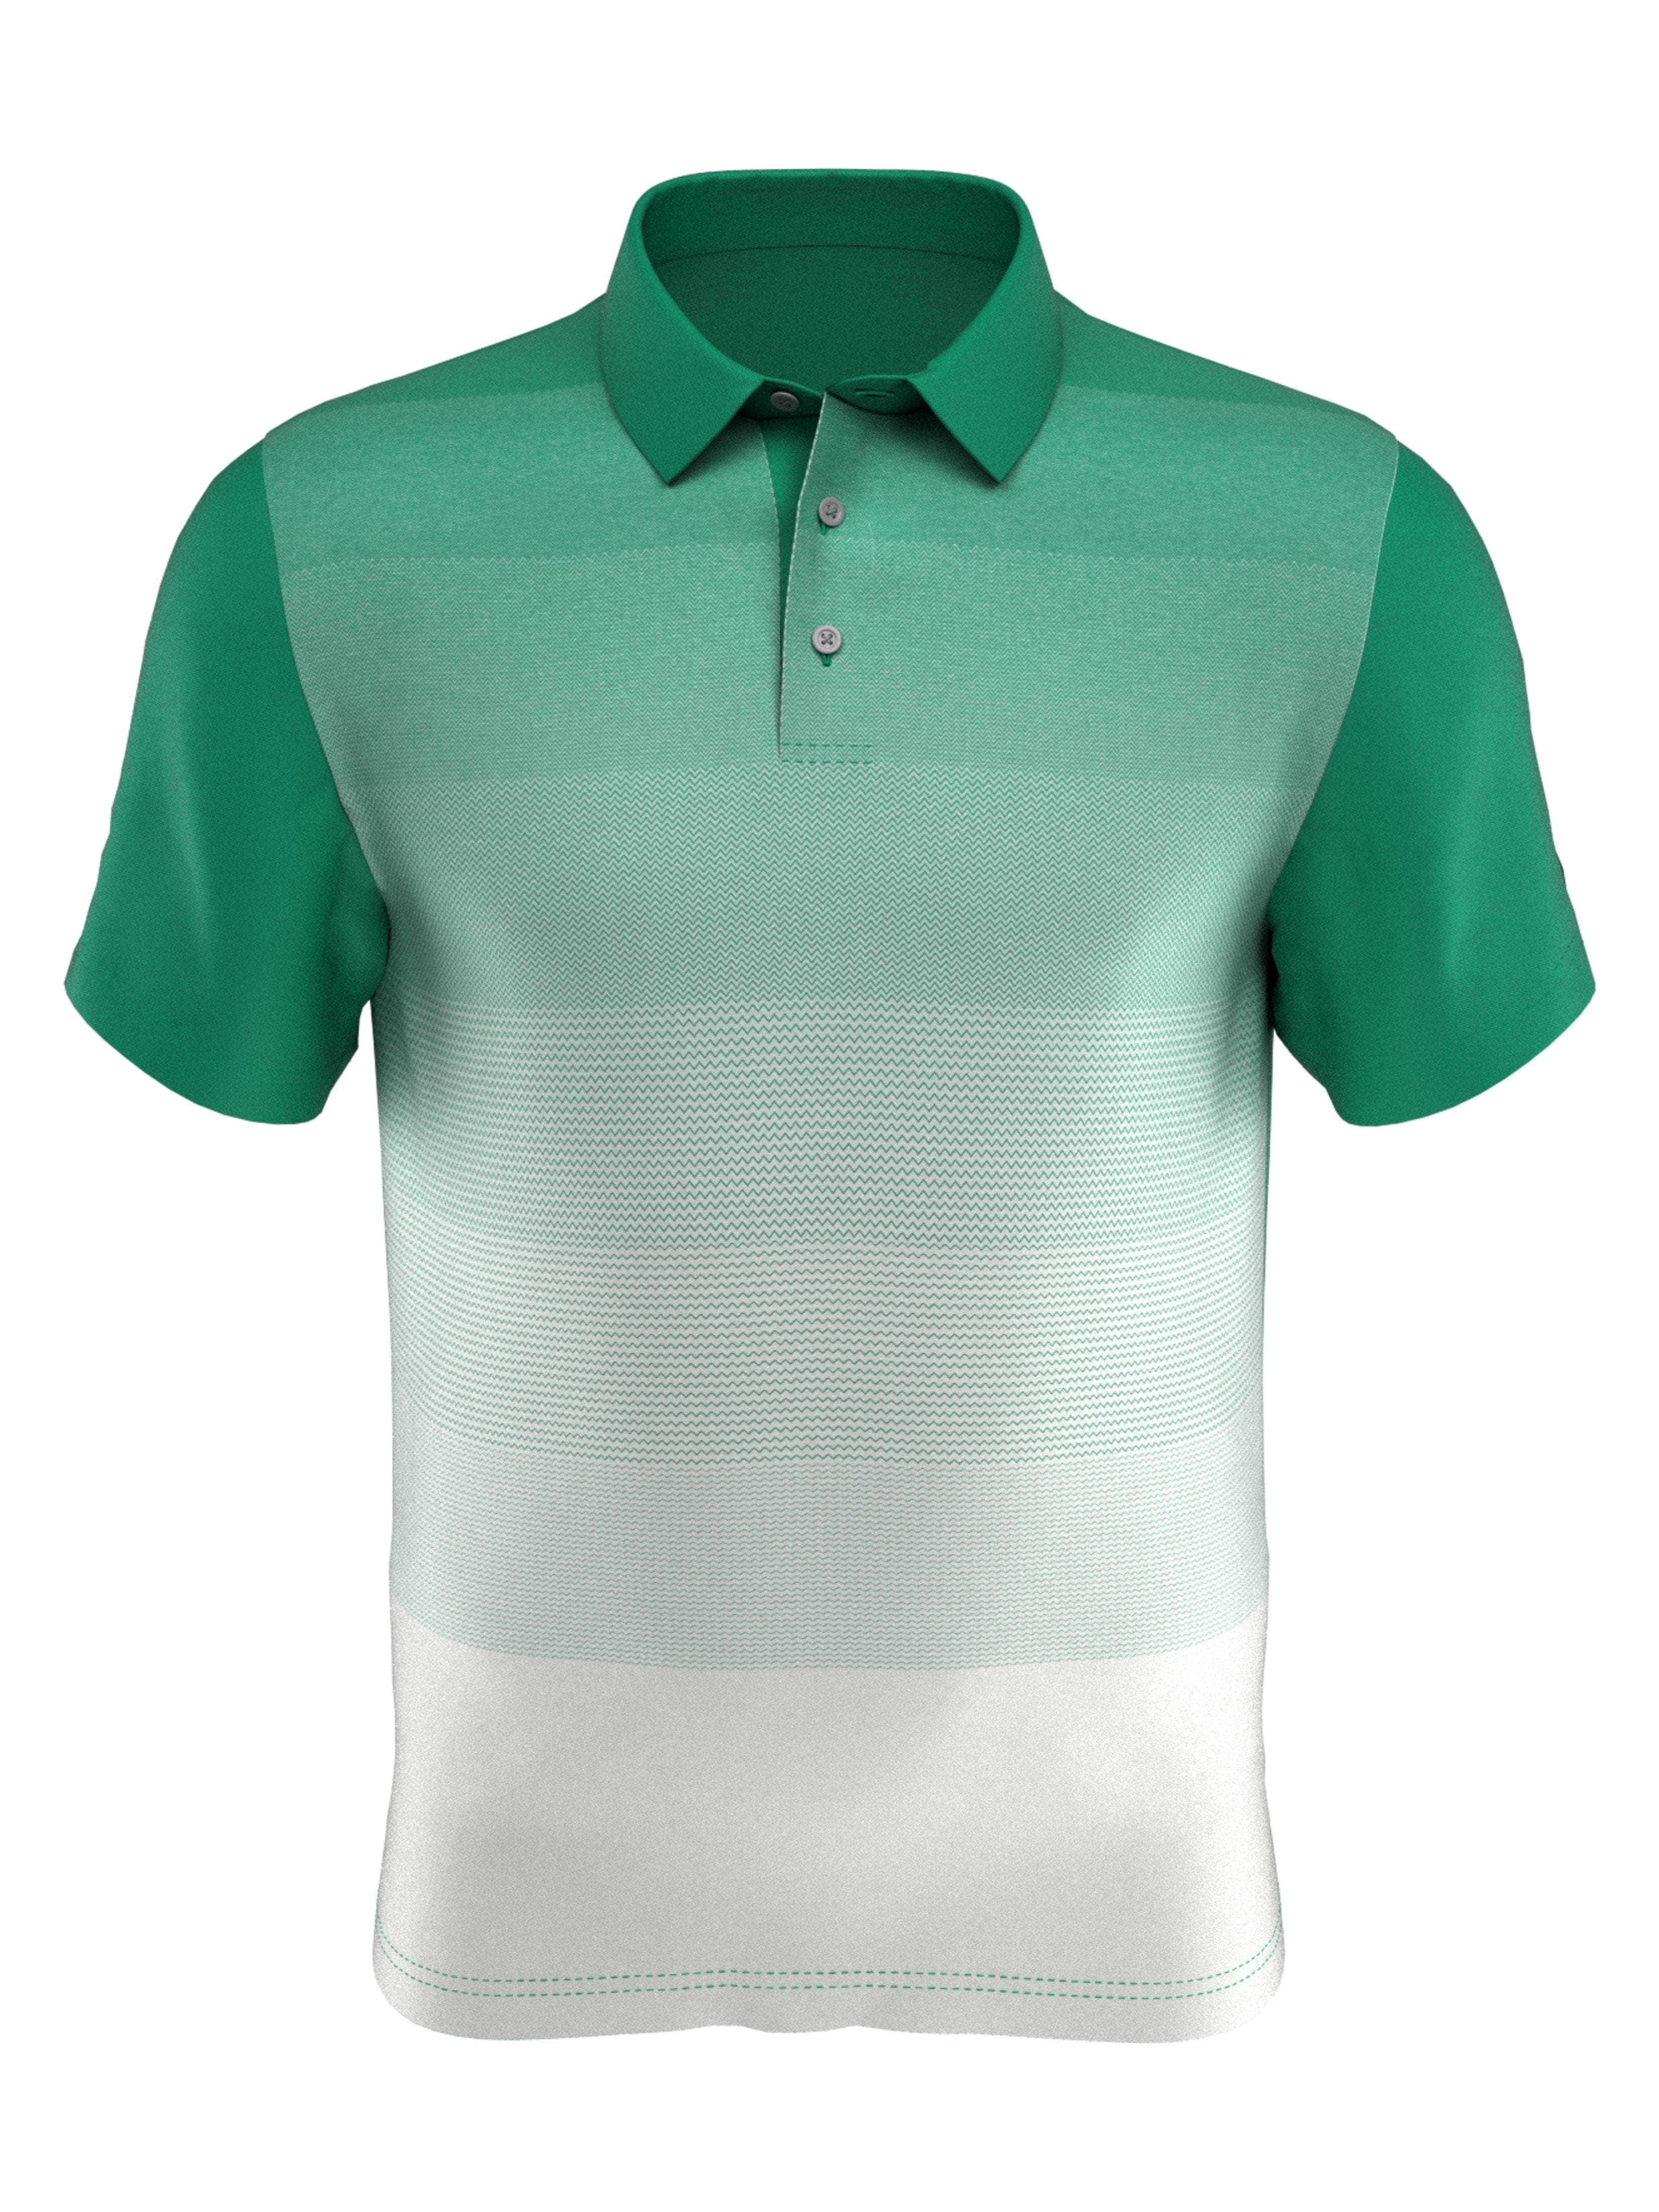 PGA TOUR Apparel Boys Front Ombre Polo Shirt, Size Medium, Tennis Court Green, 100% Polyester | Golf Apparel Shop